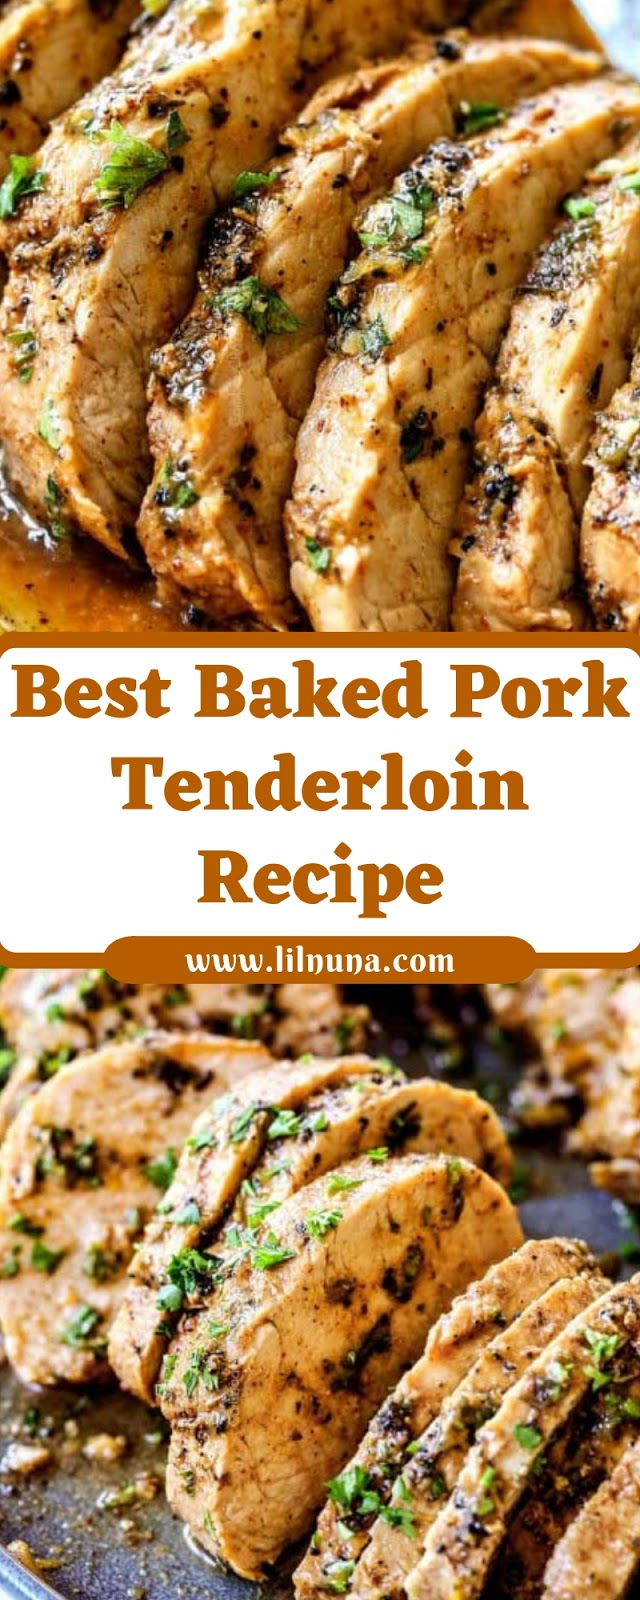 Best Baked Pork Tenderloin Recipe